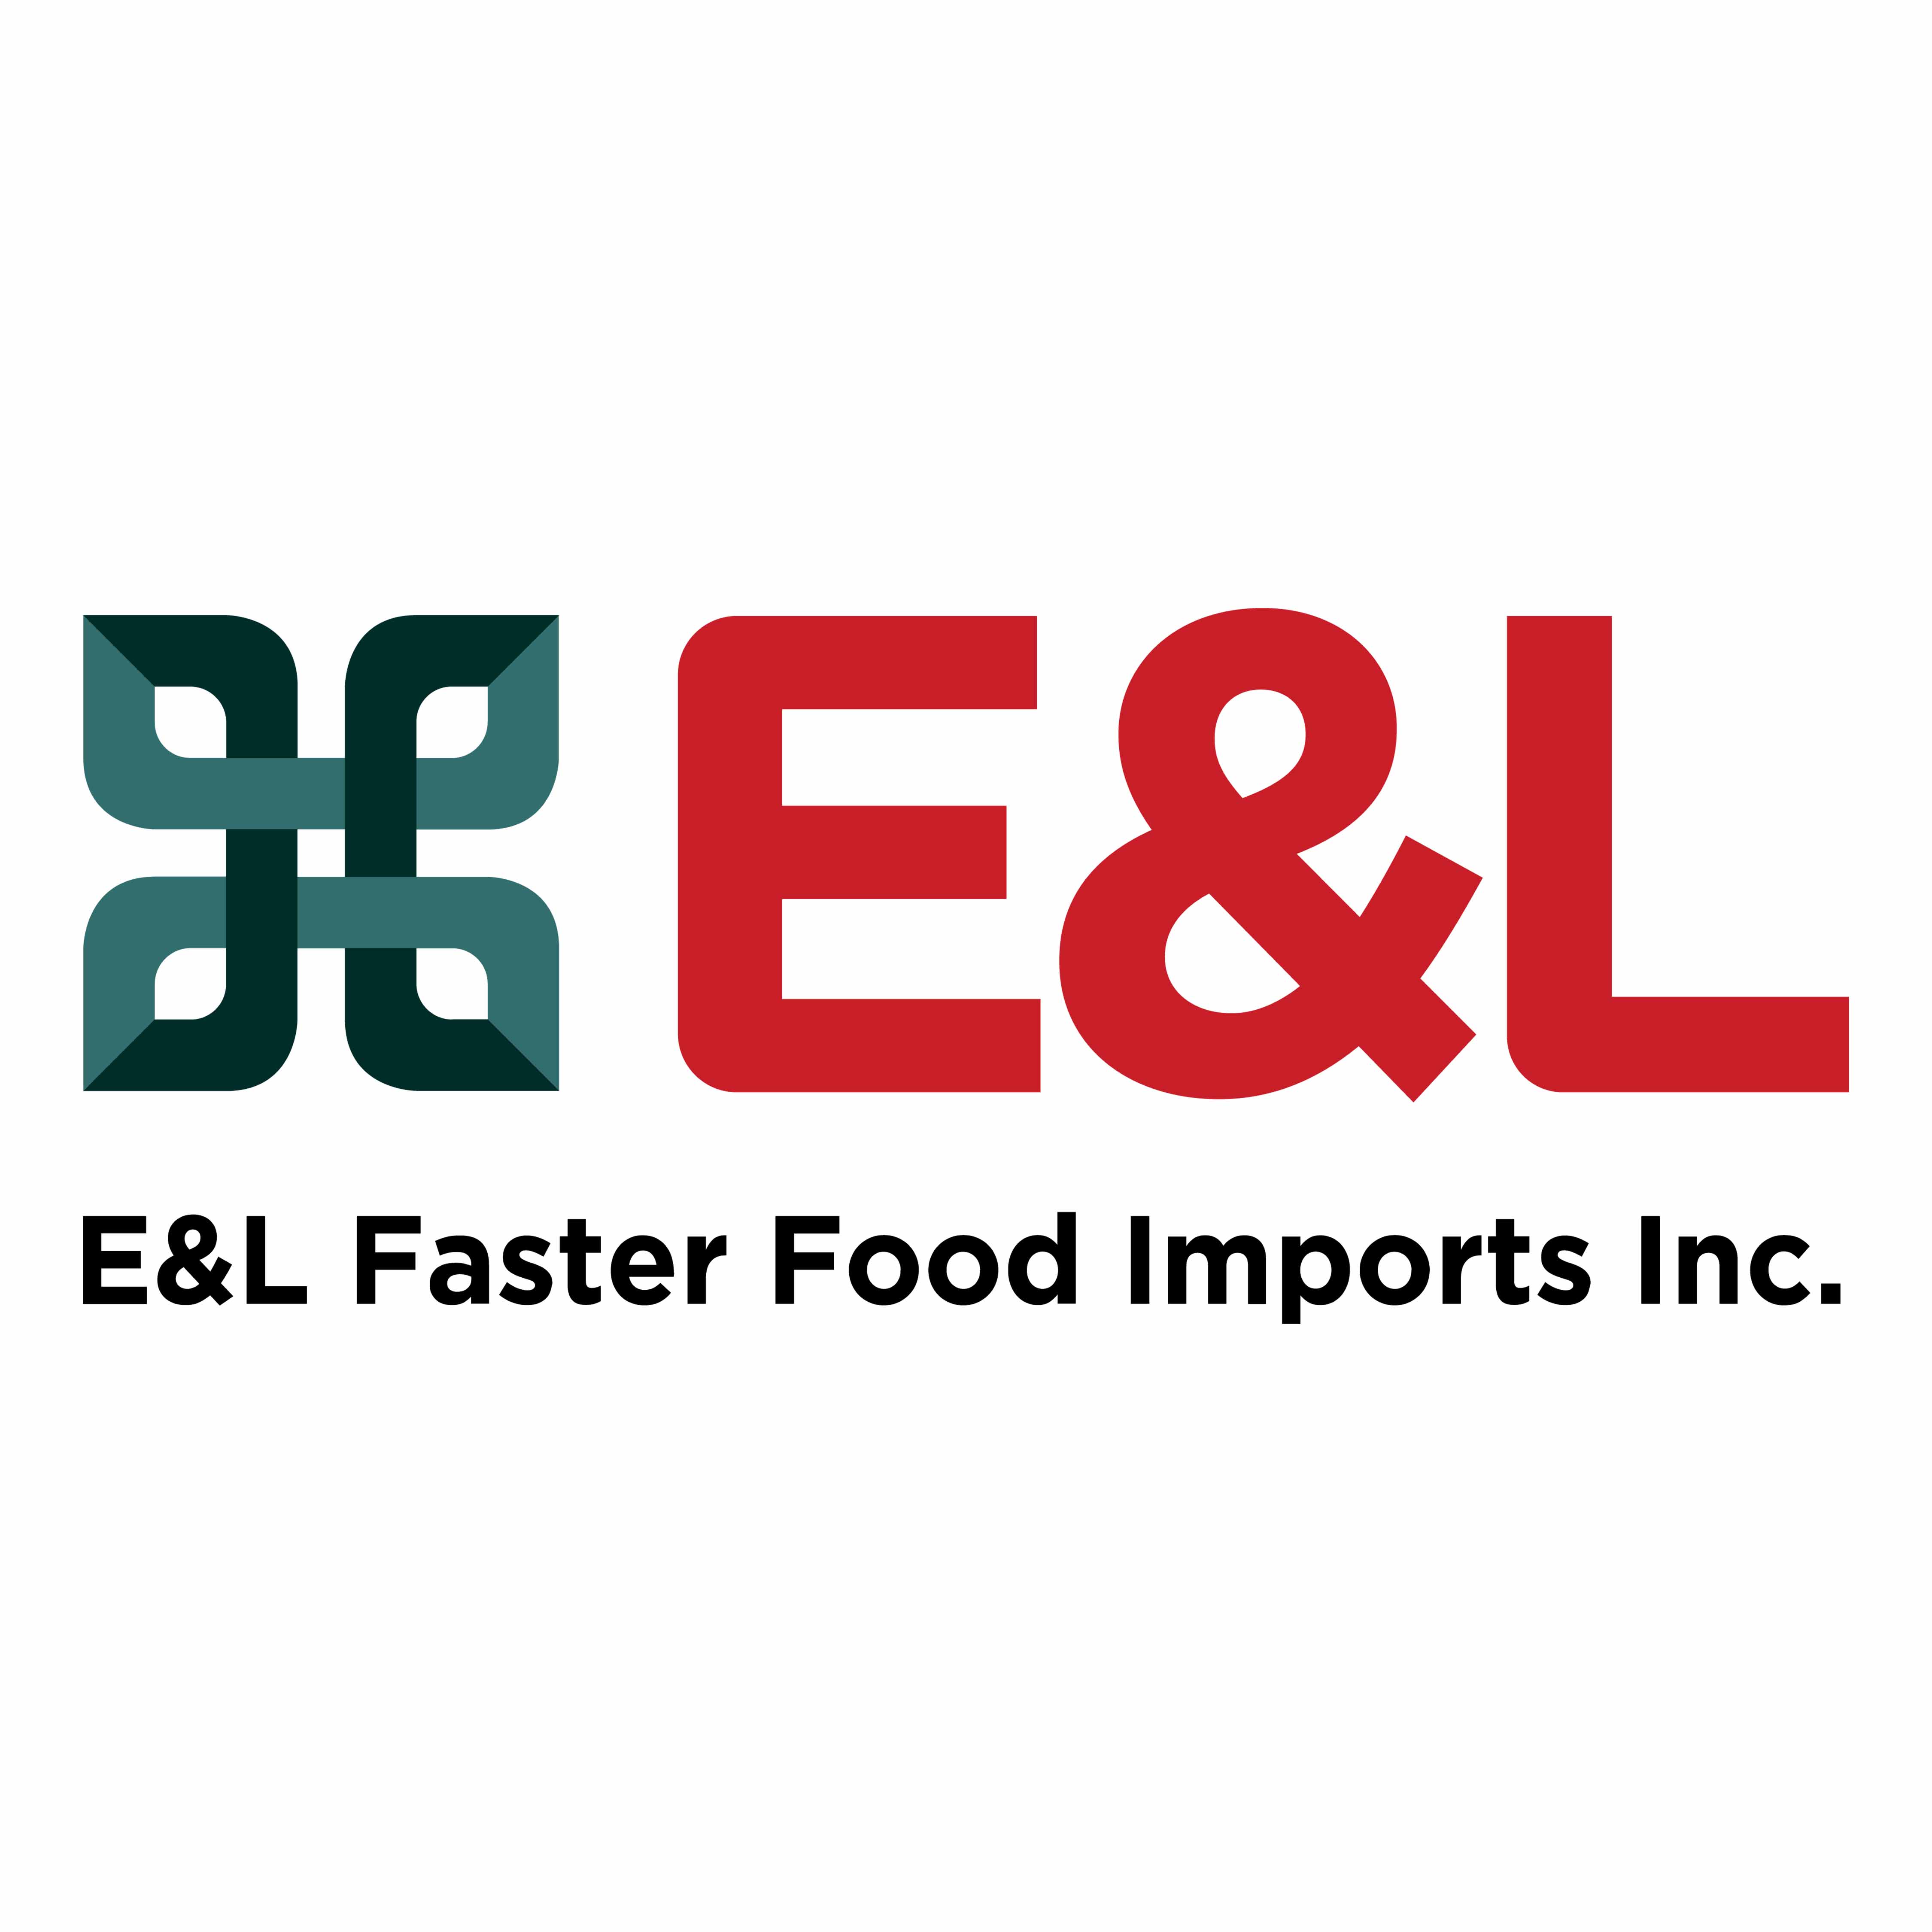 E&L Faster Food Imports Inc.